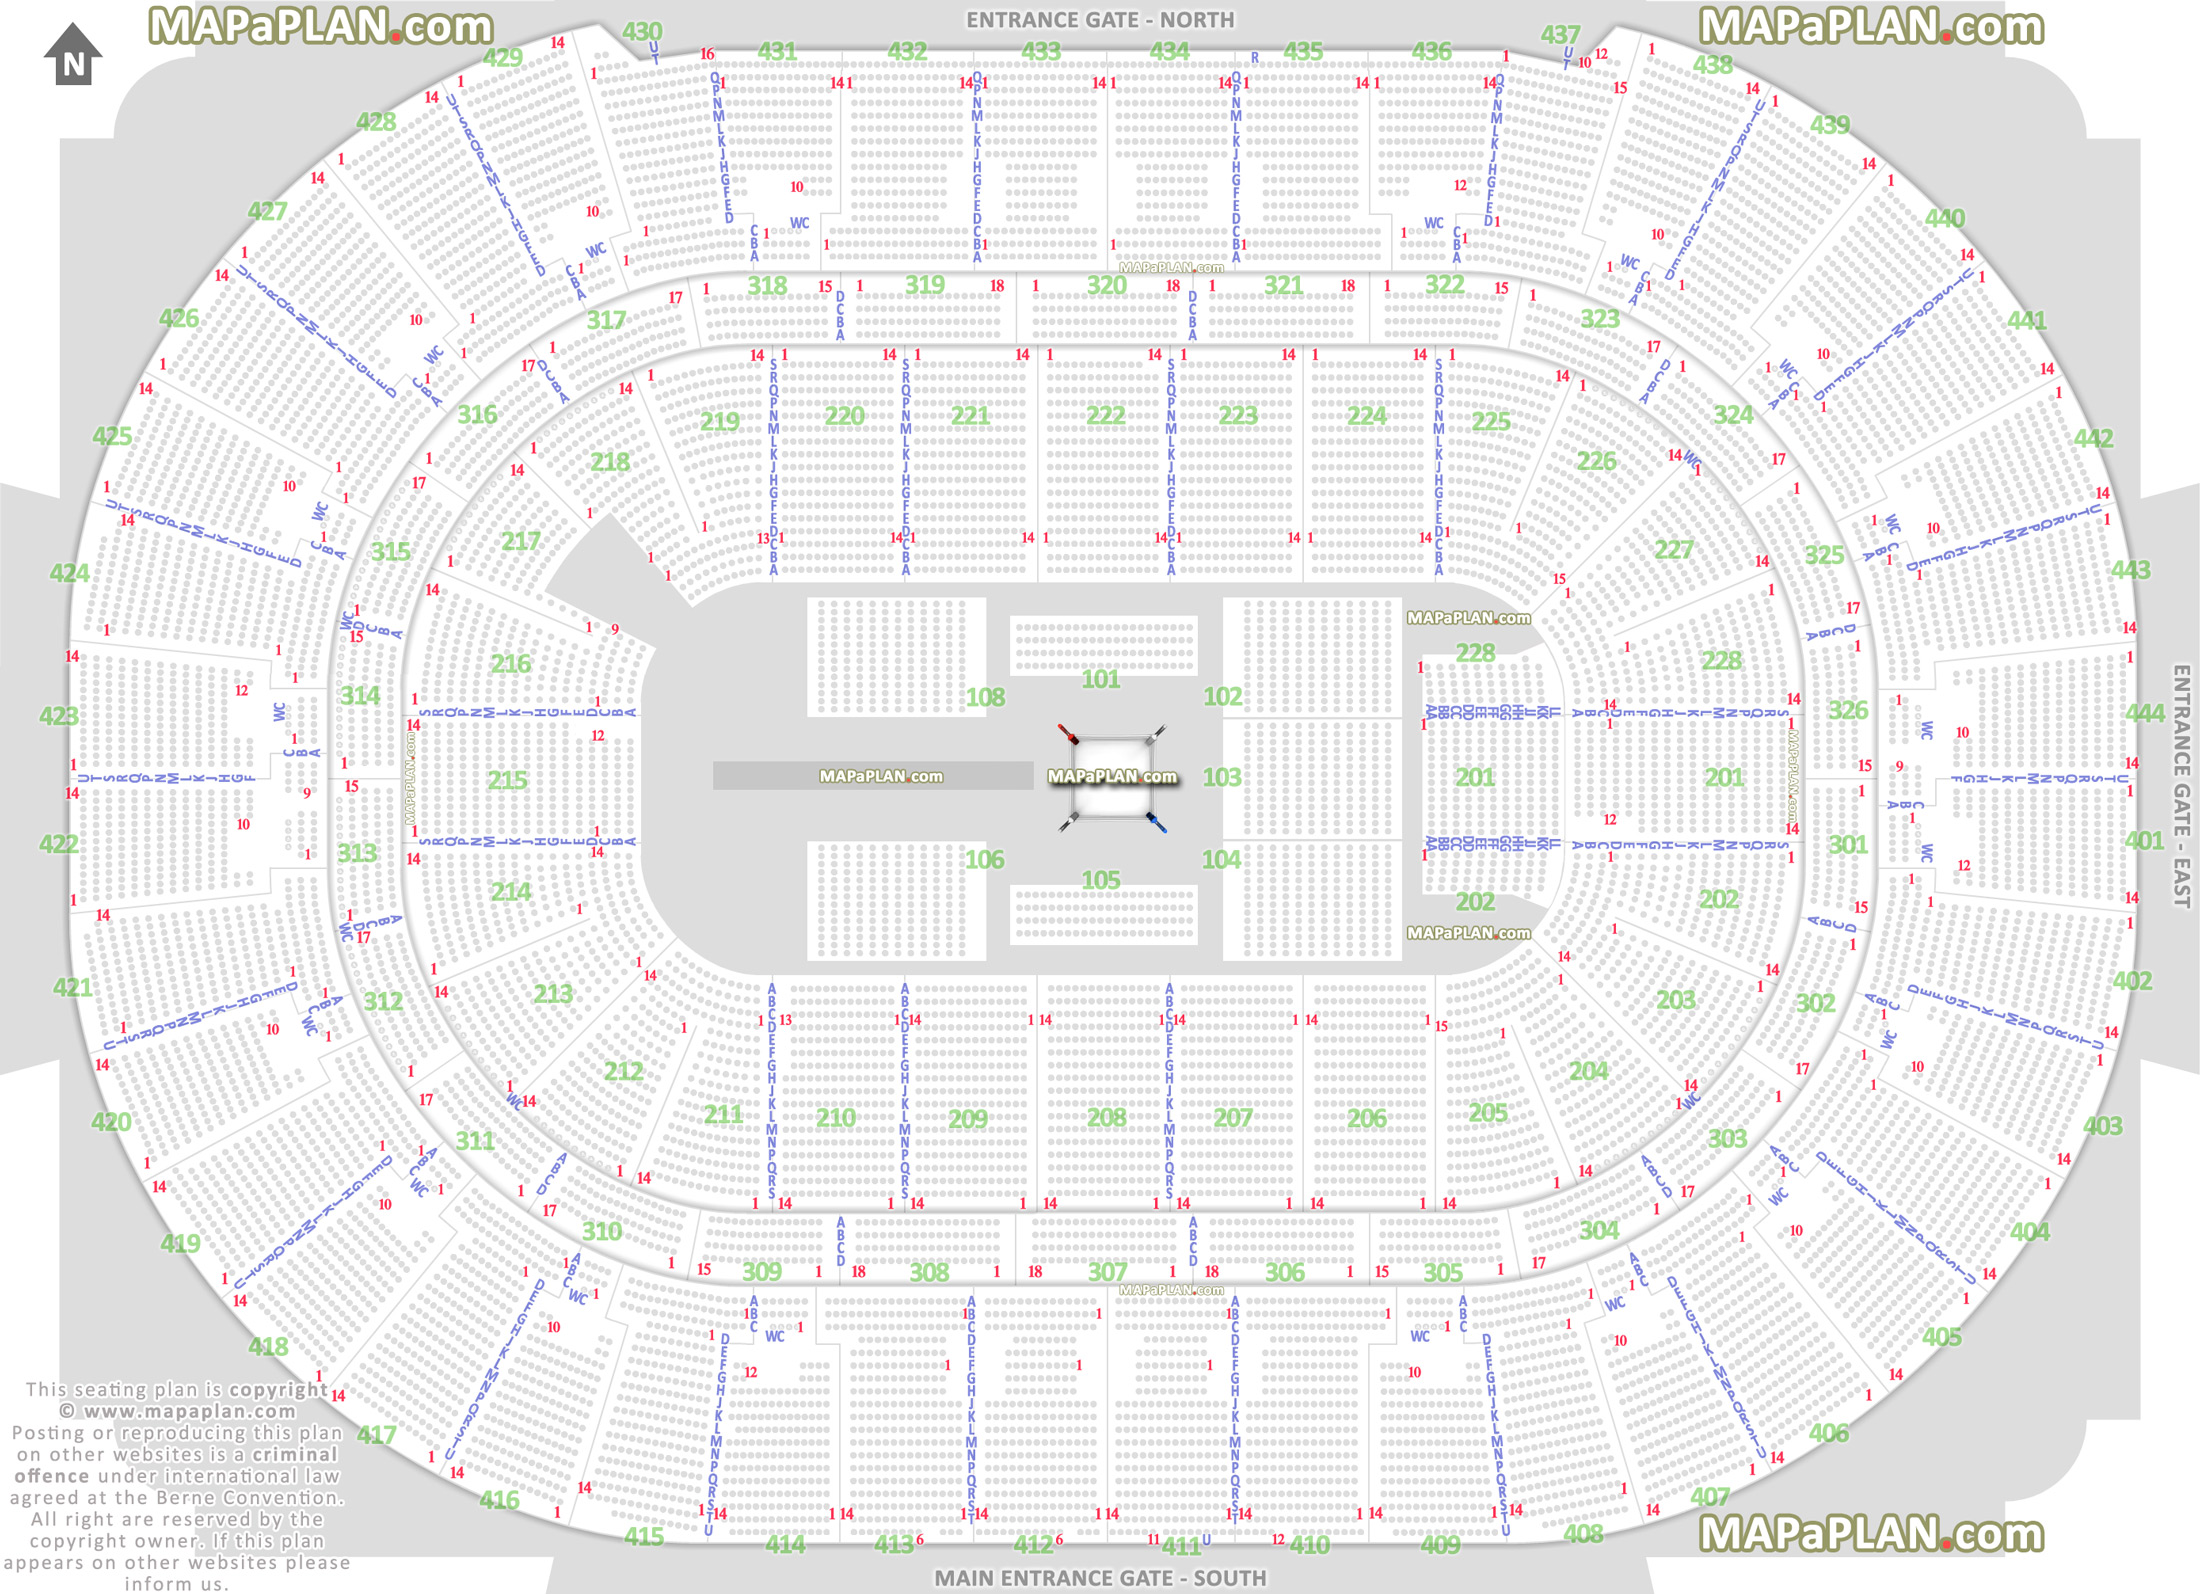 Honda Center Wrestling Seating Chart